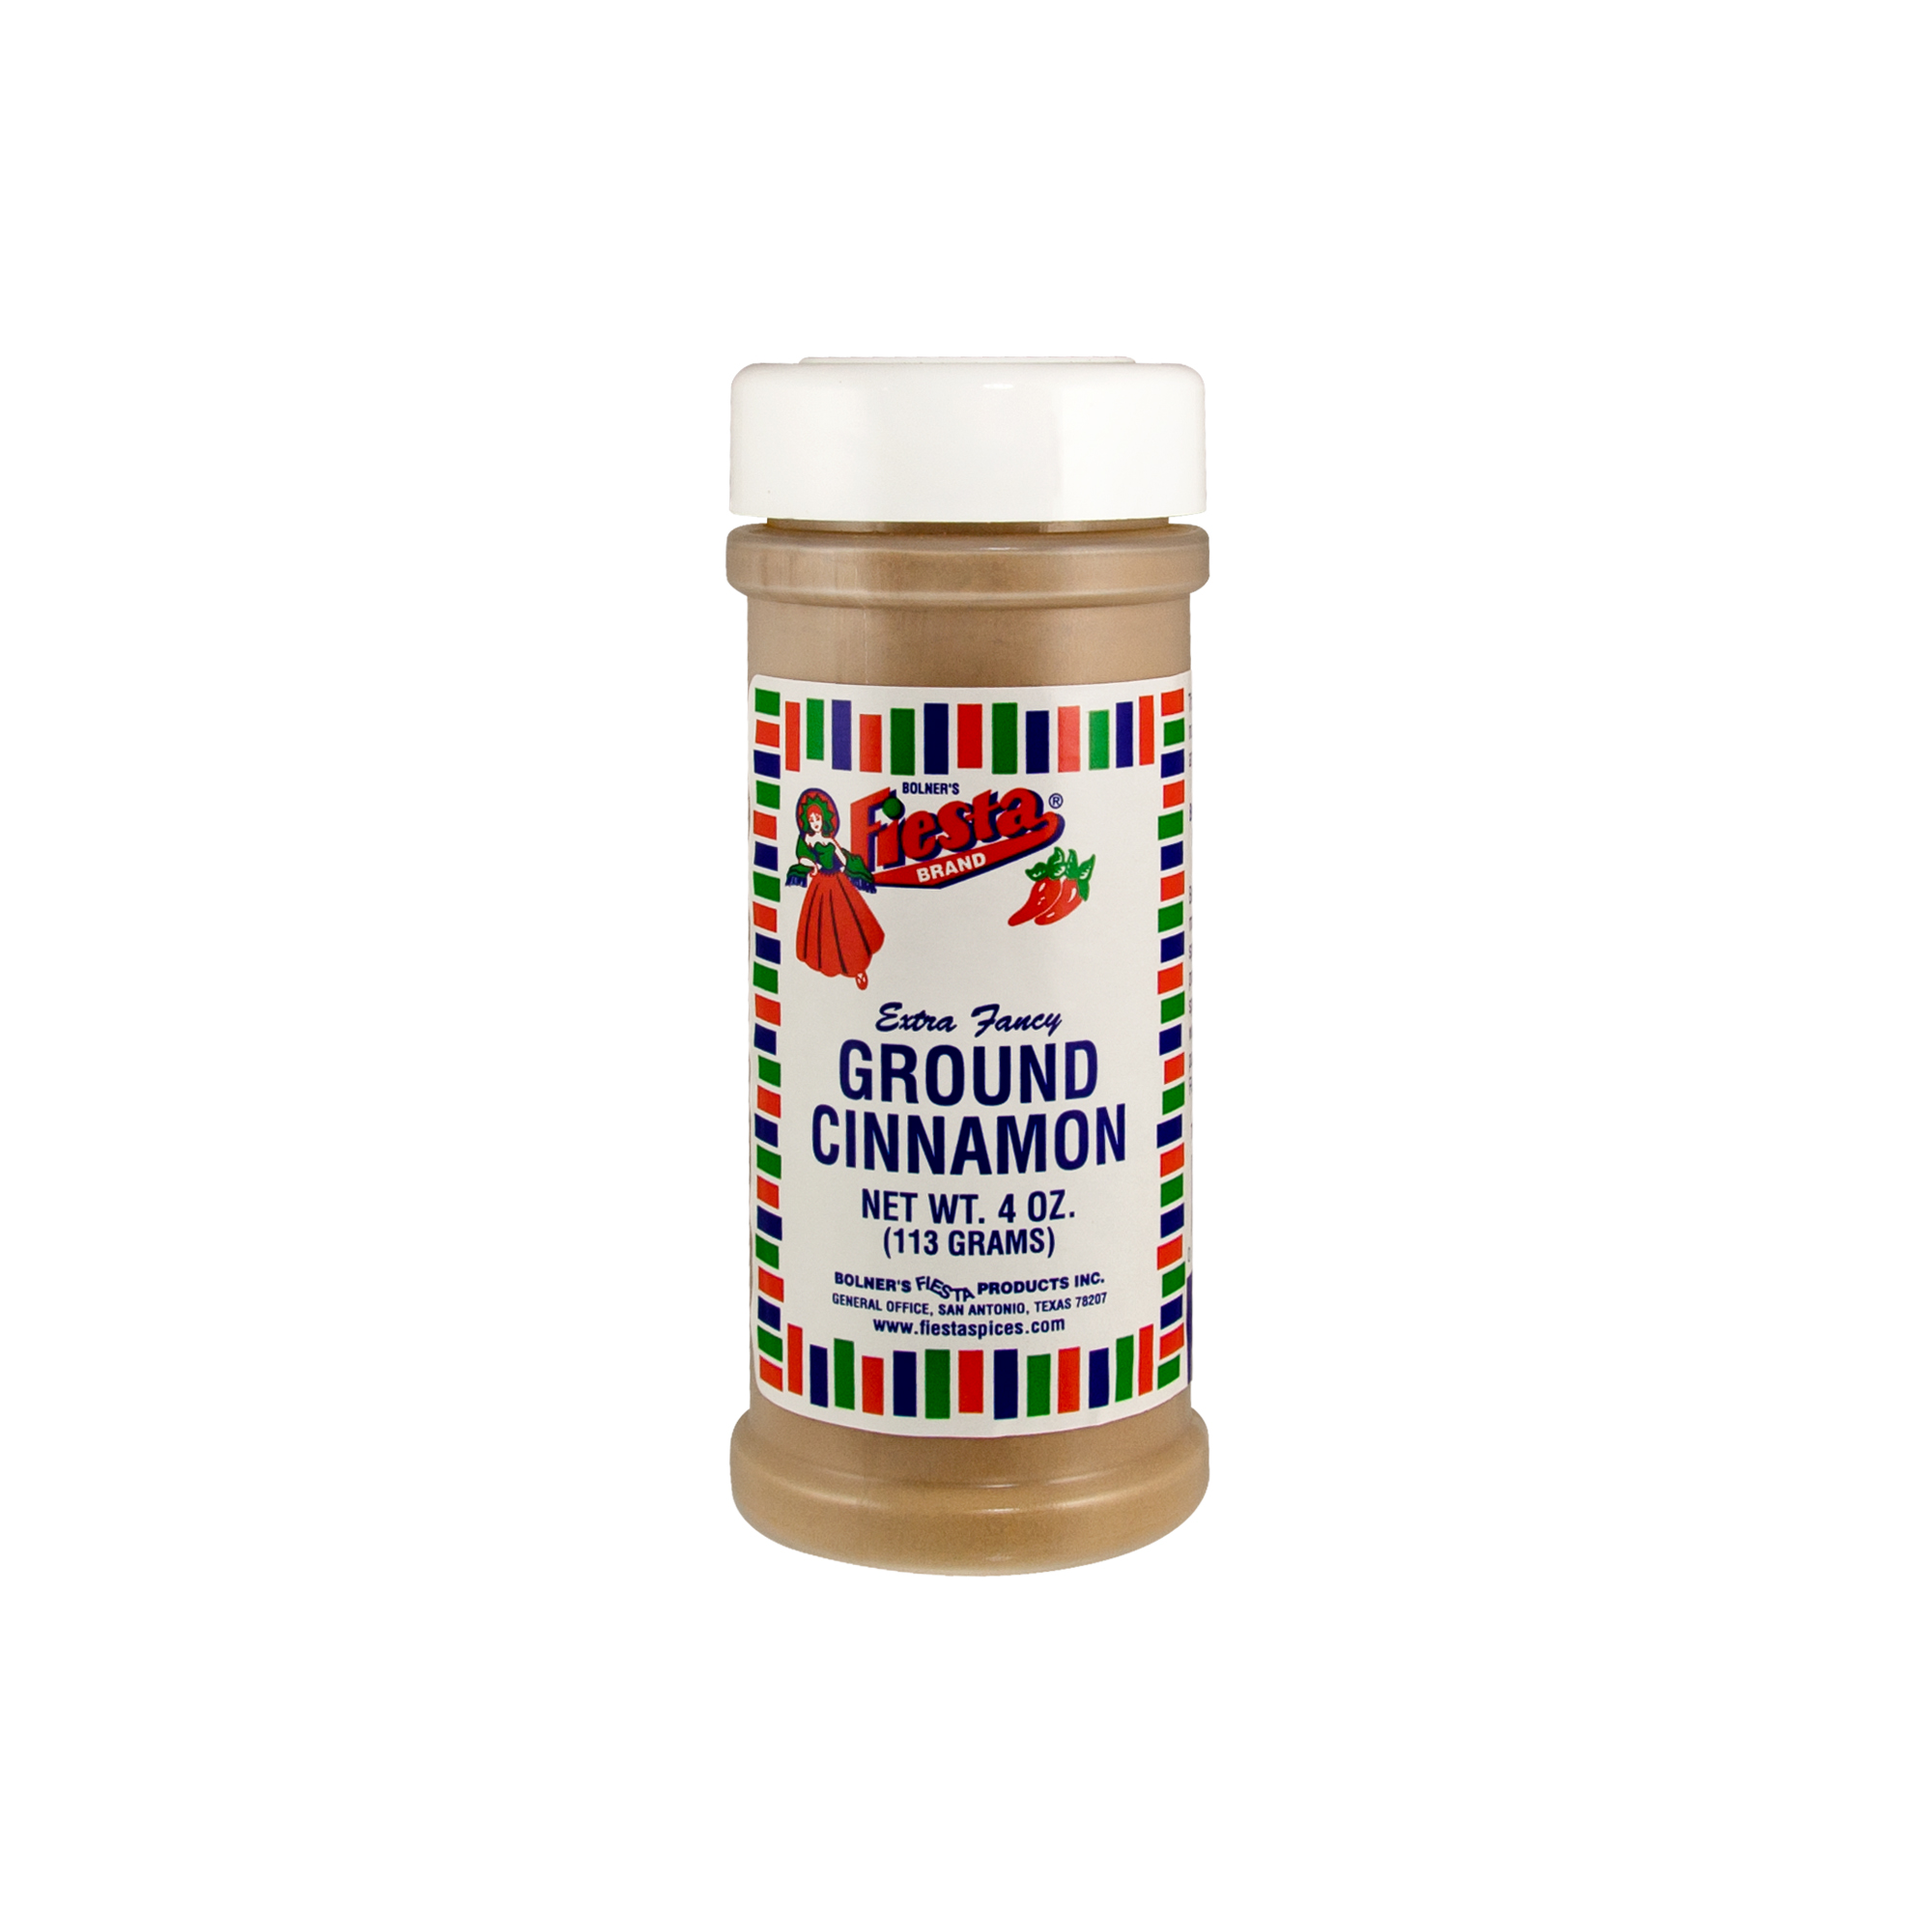 Cinnamon Ground Fiesta Spices